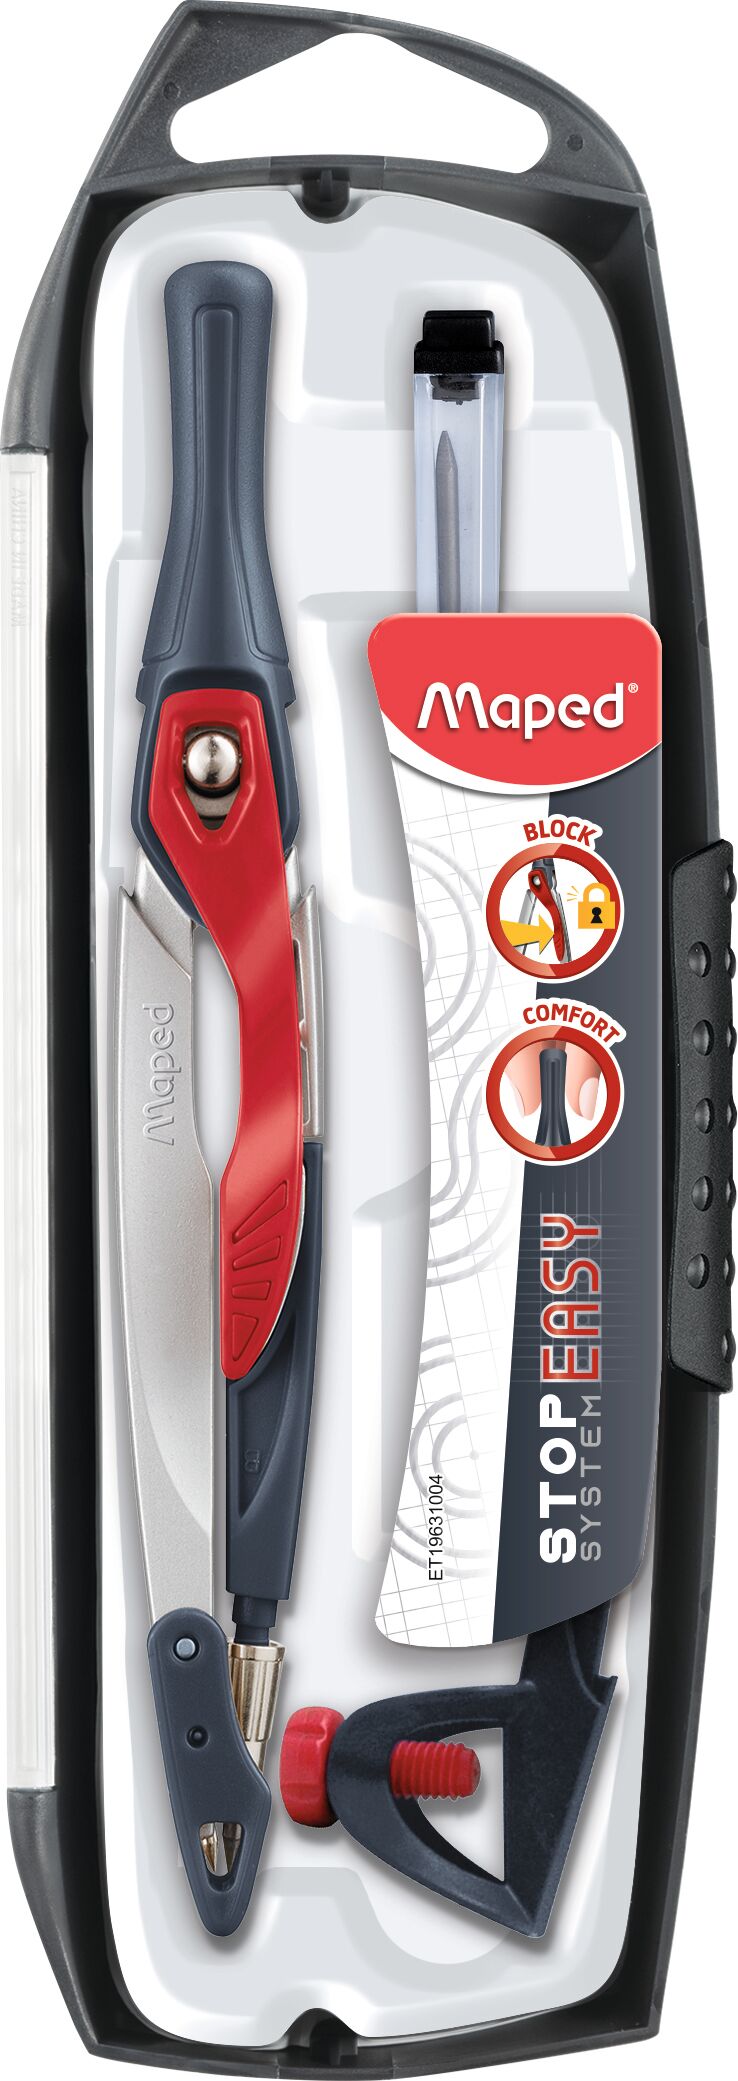 Maped - Coffret Compas Maped Stop System 5 pièces - Librairie de